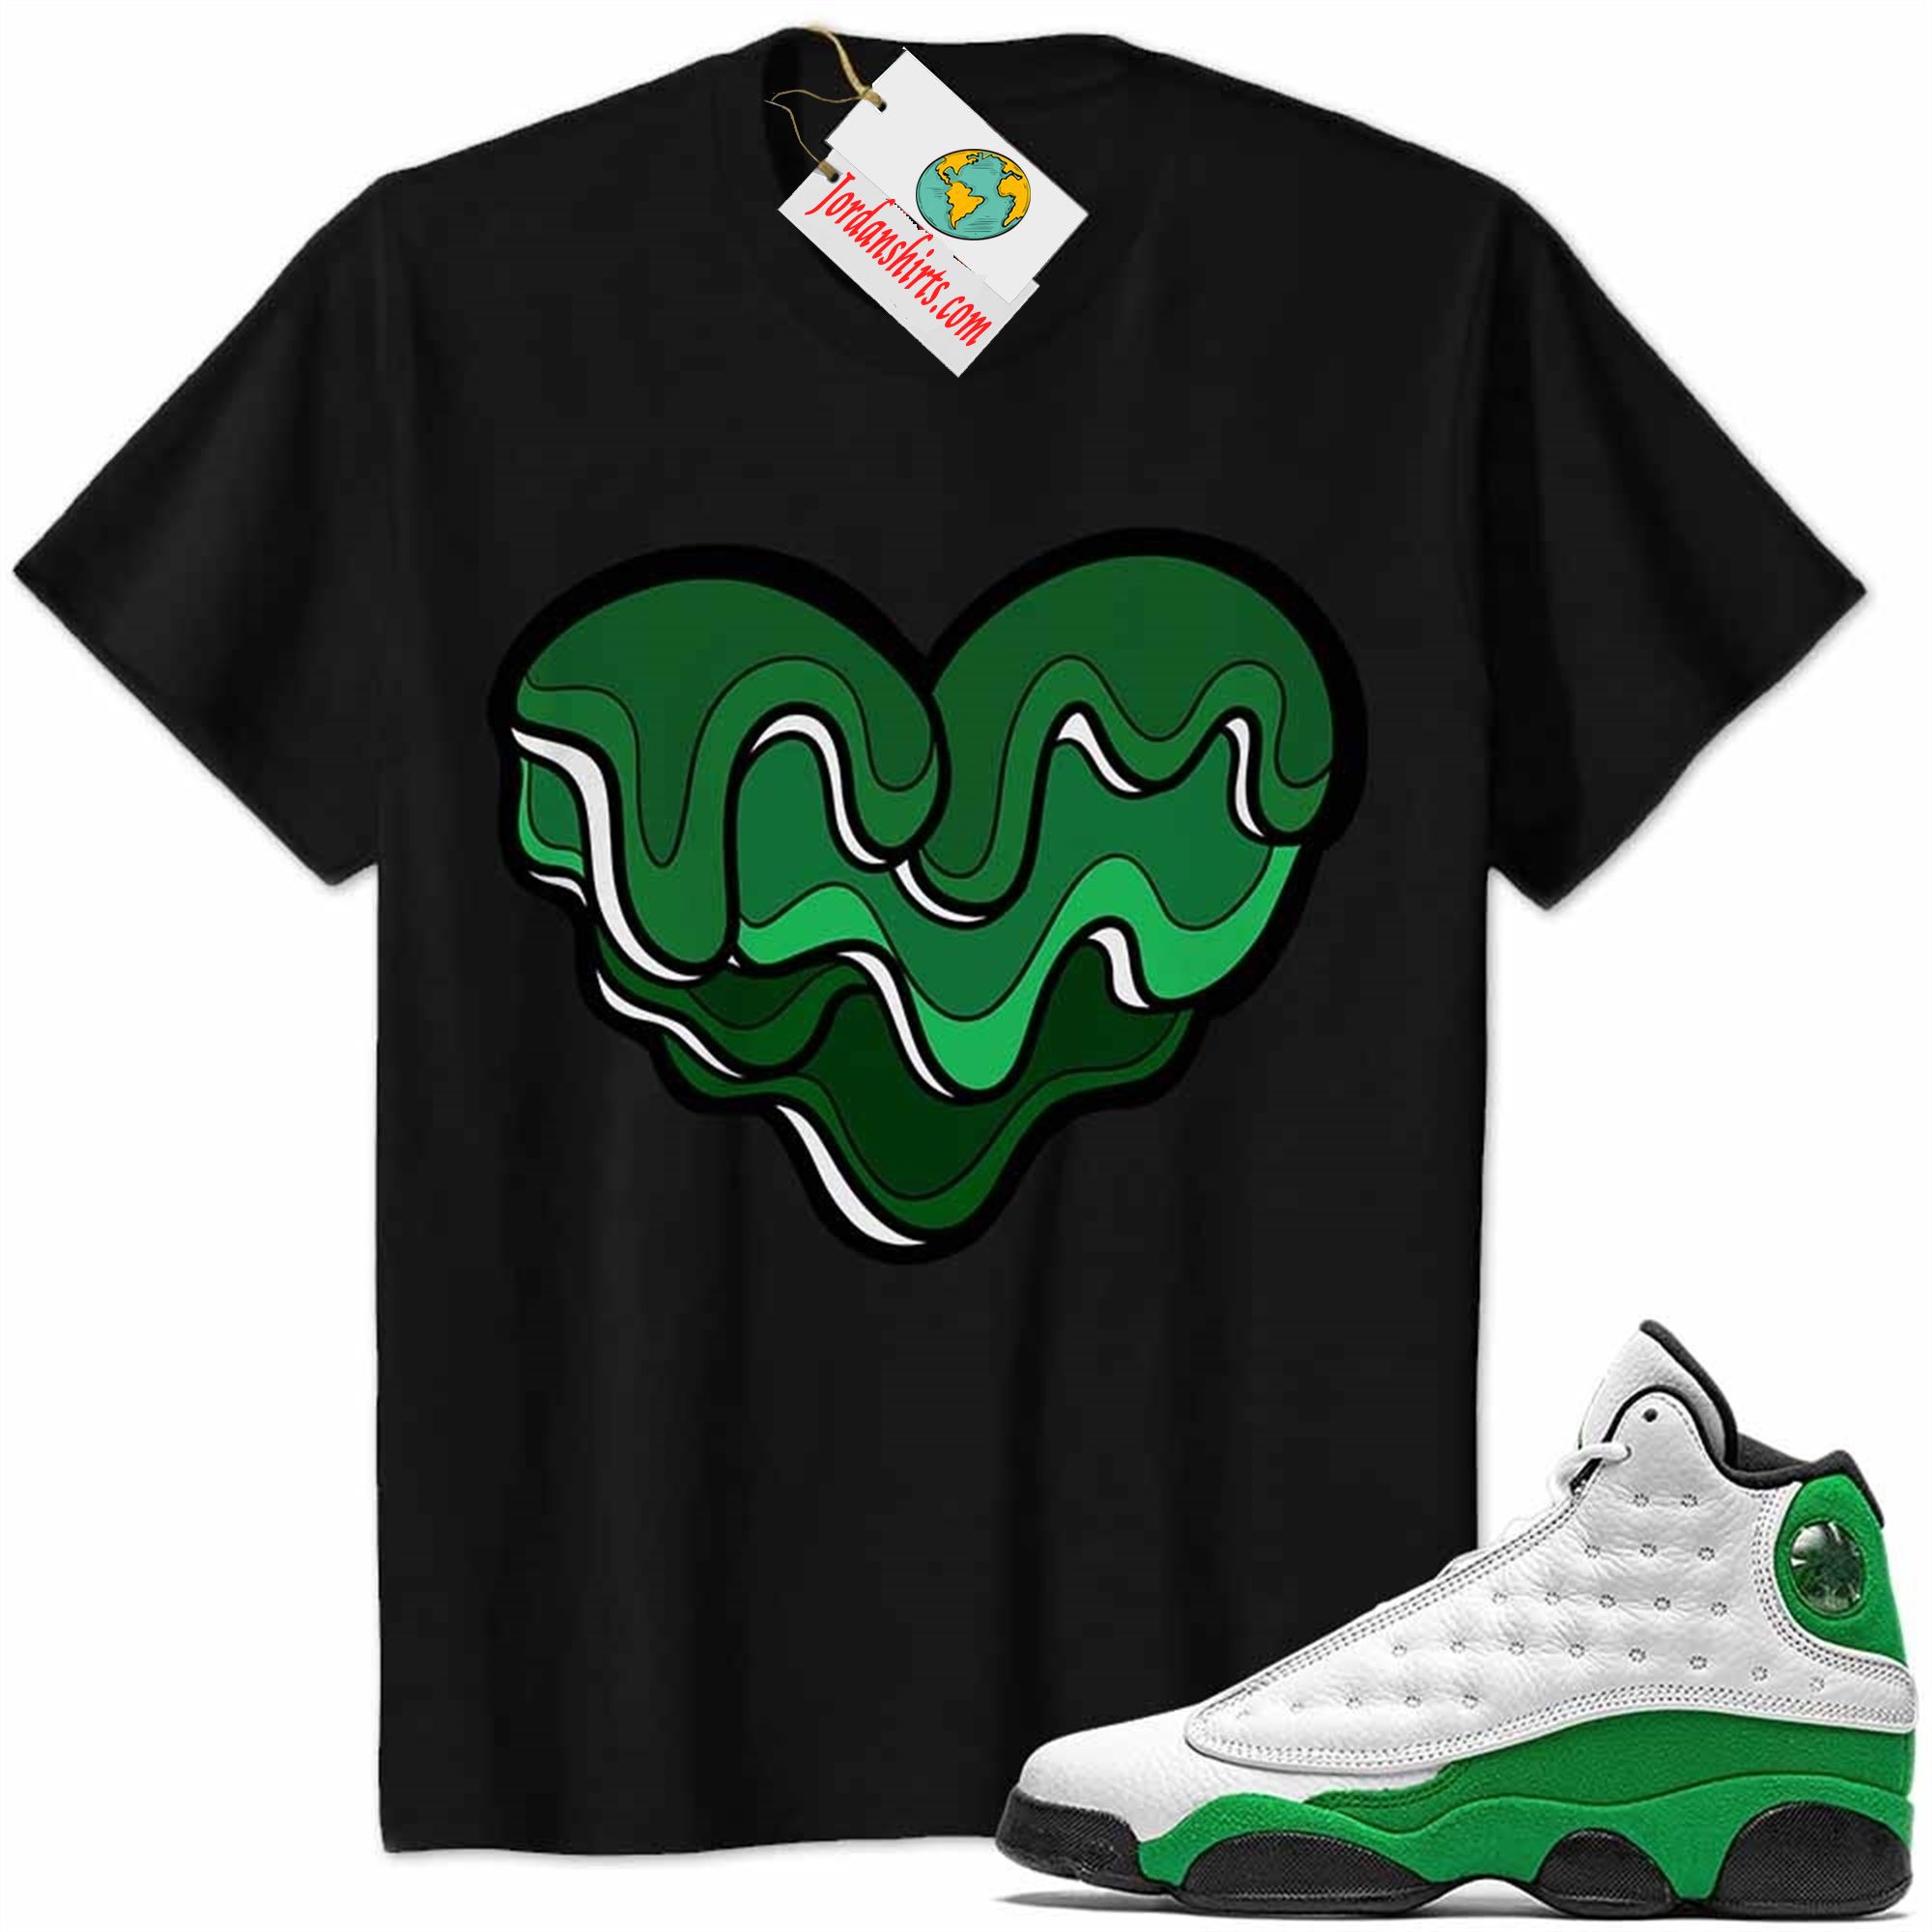 Jordan 13 Shirt, Melt Dripping Heart Black Air Jordan 13 Lucky Green 13s Size Up To 5xl